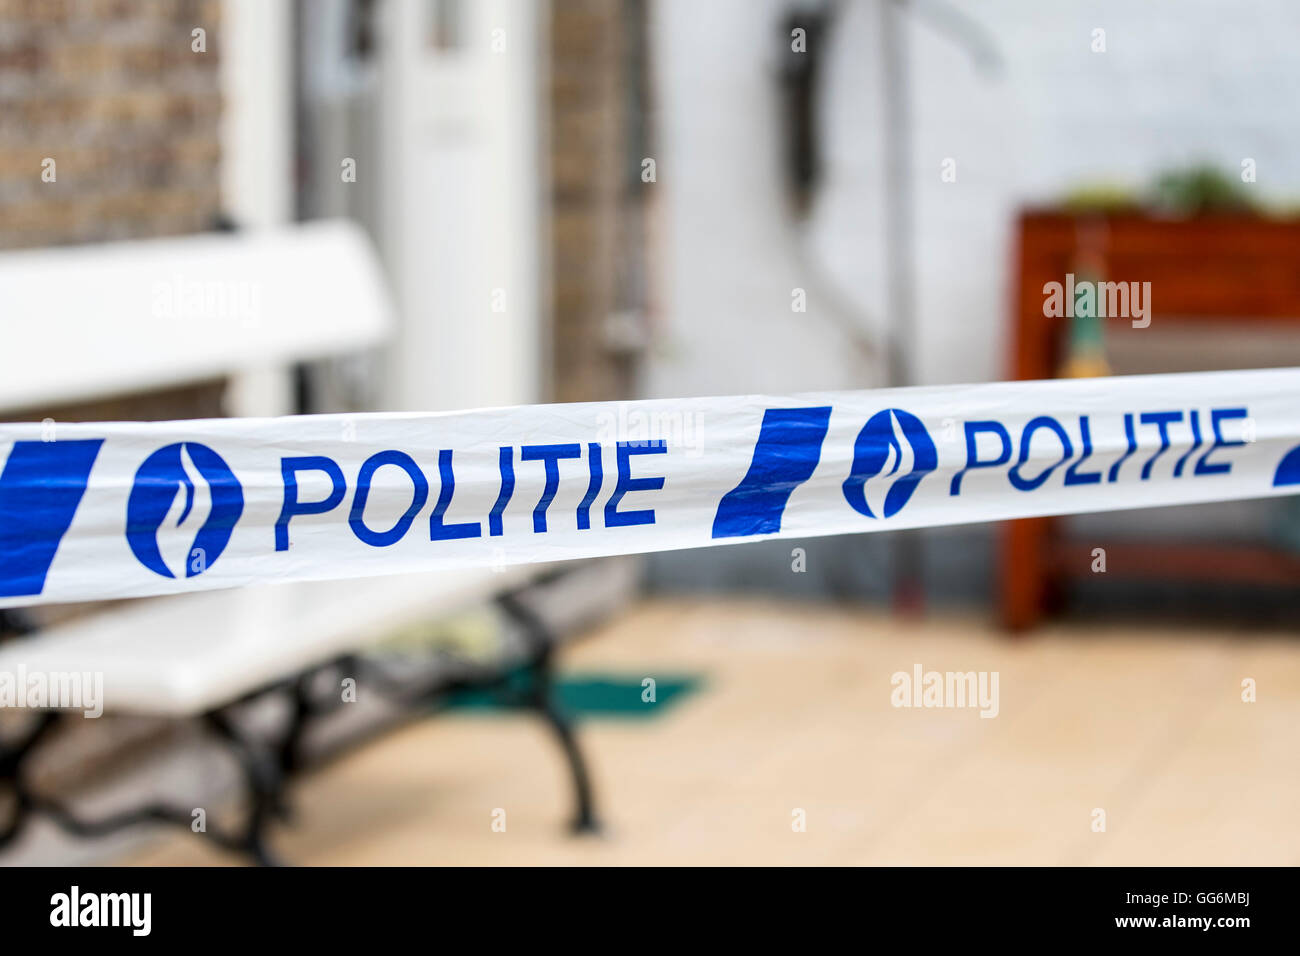 La policía belga / politie cinta en la escena del crimen, Bélgica Foto de stock